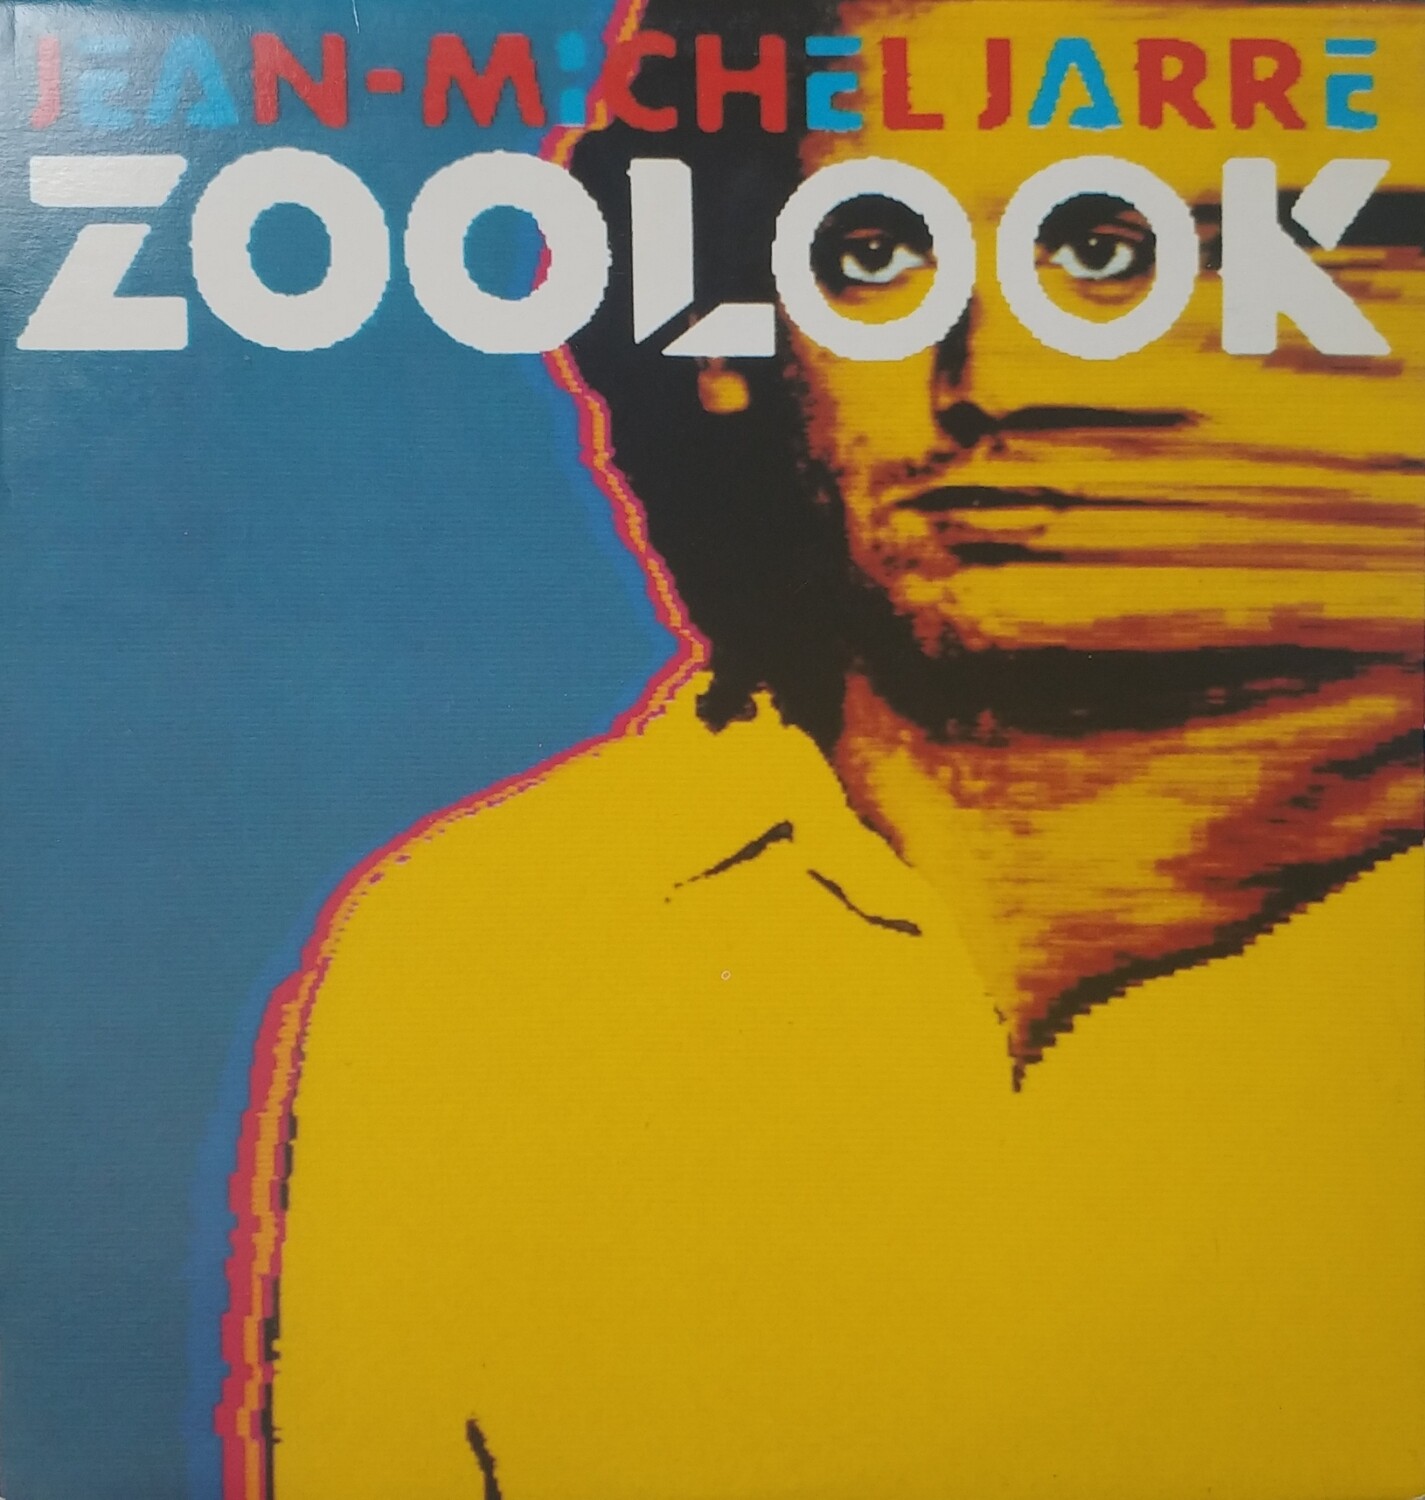 Jean-Michel Jarre - Zoolook